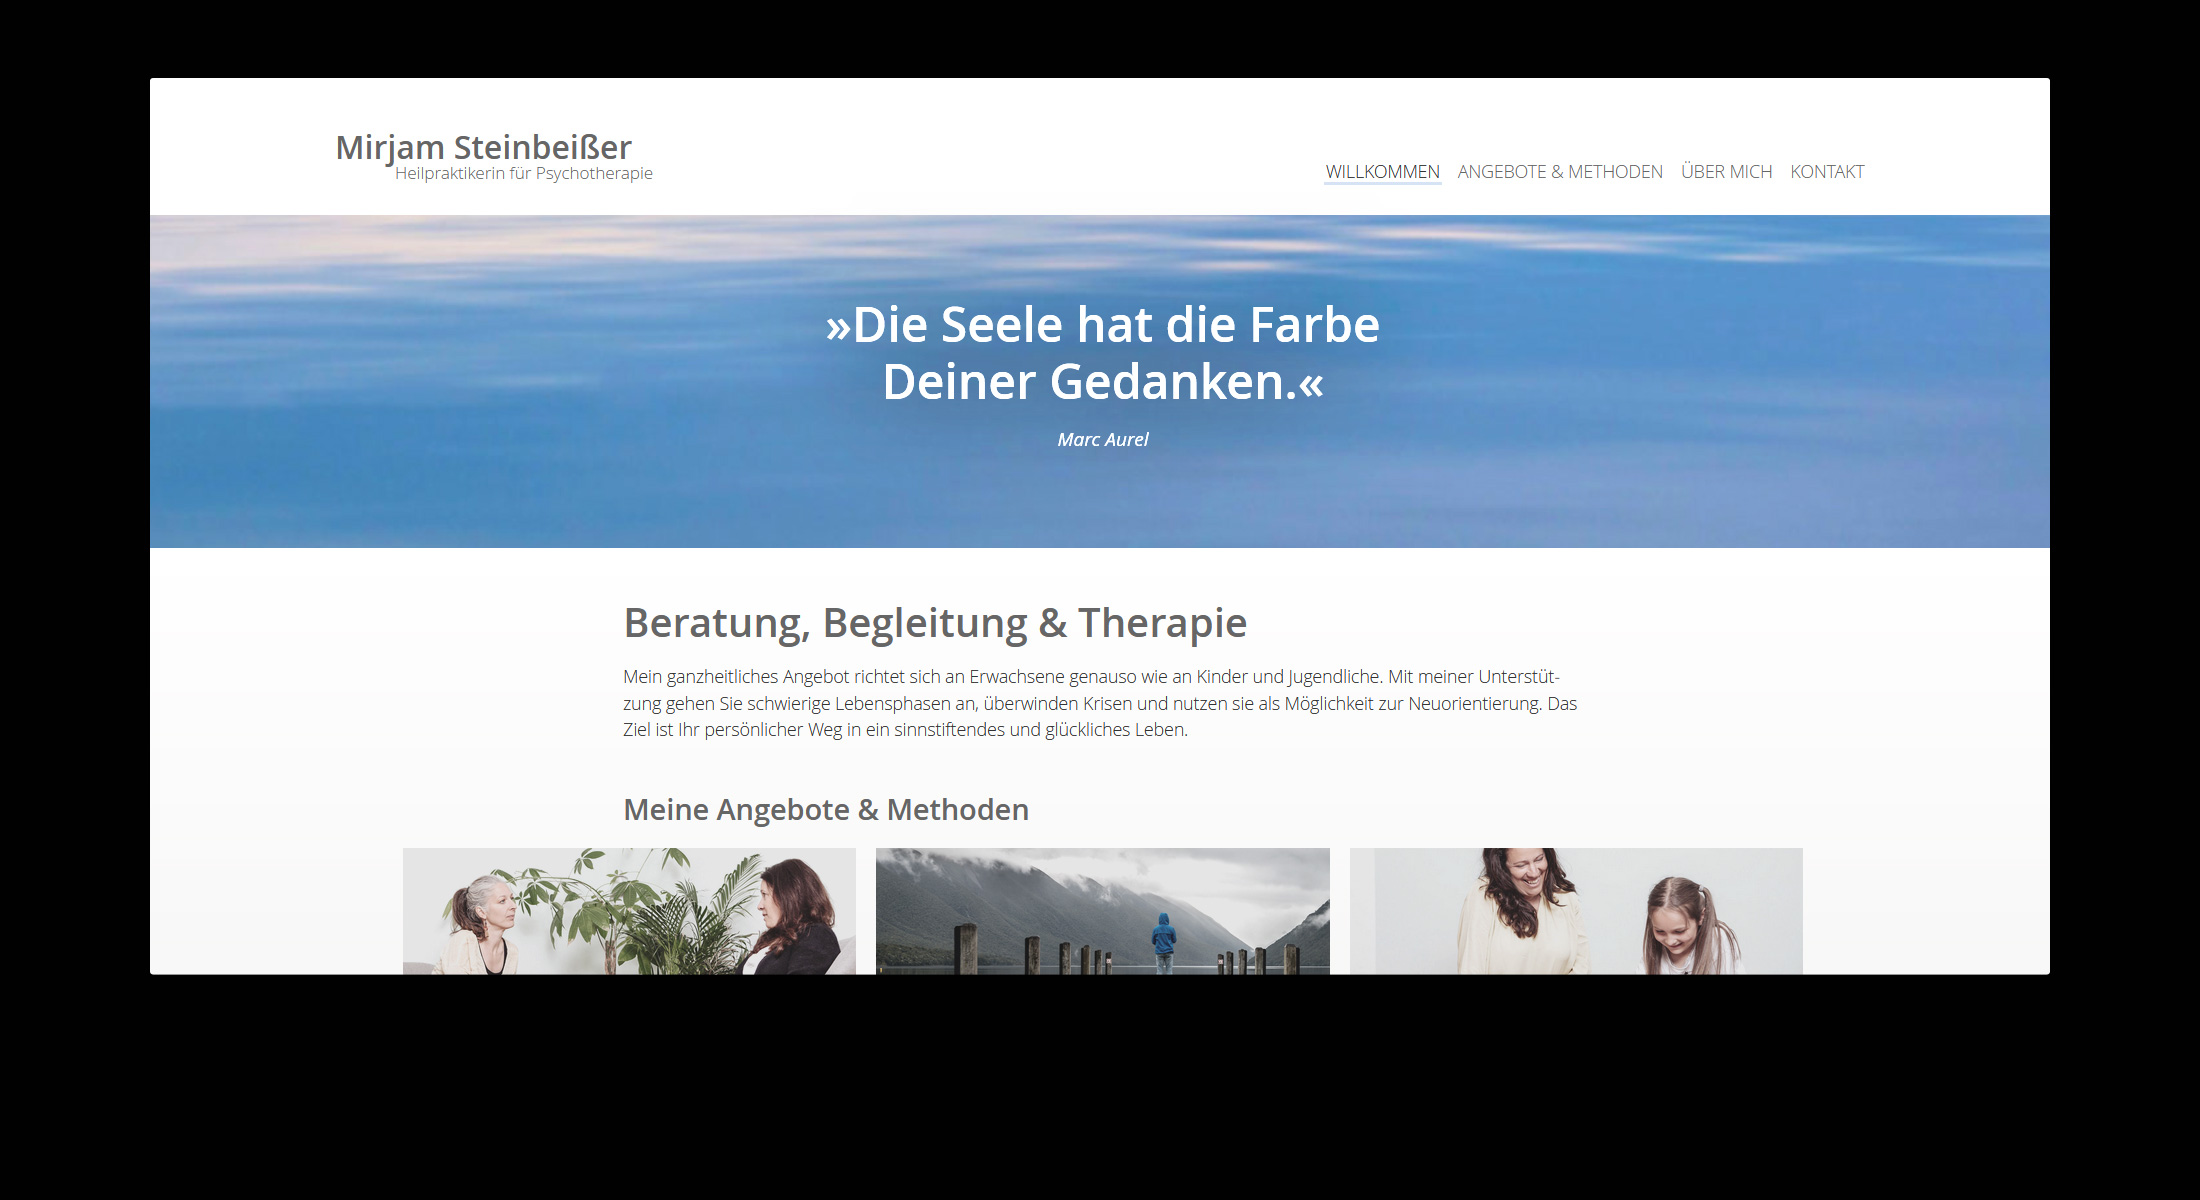 www.therapie-wessling.de